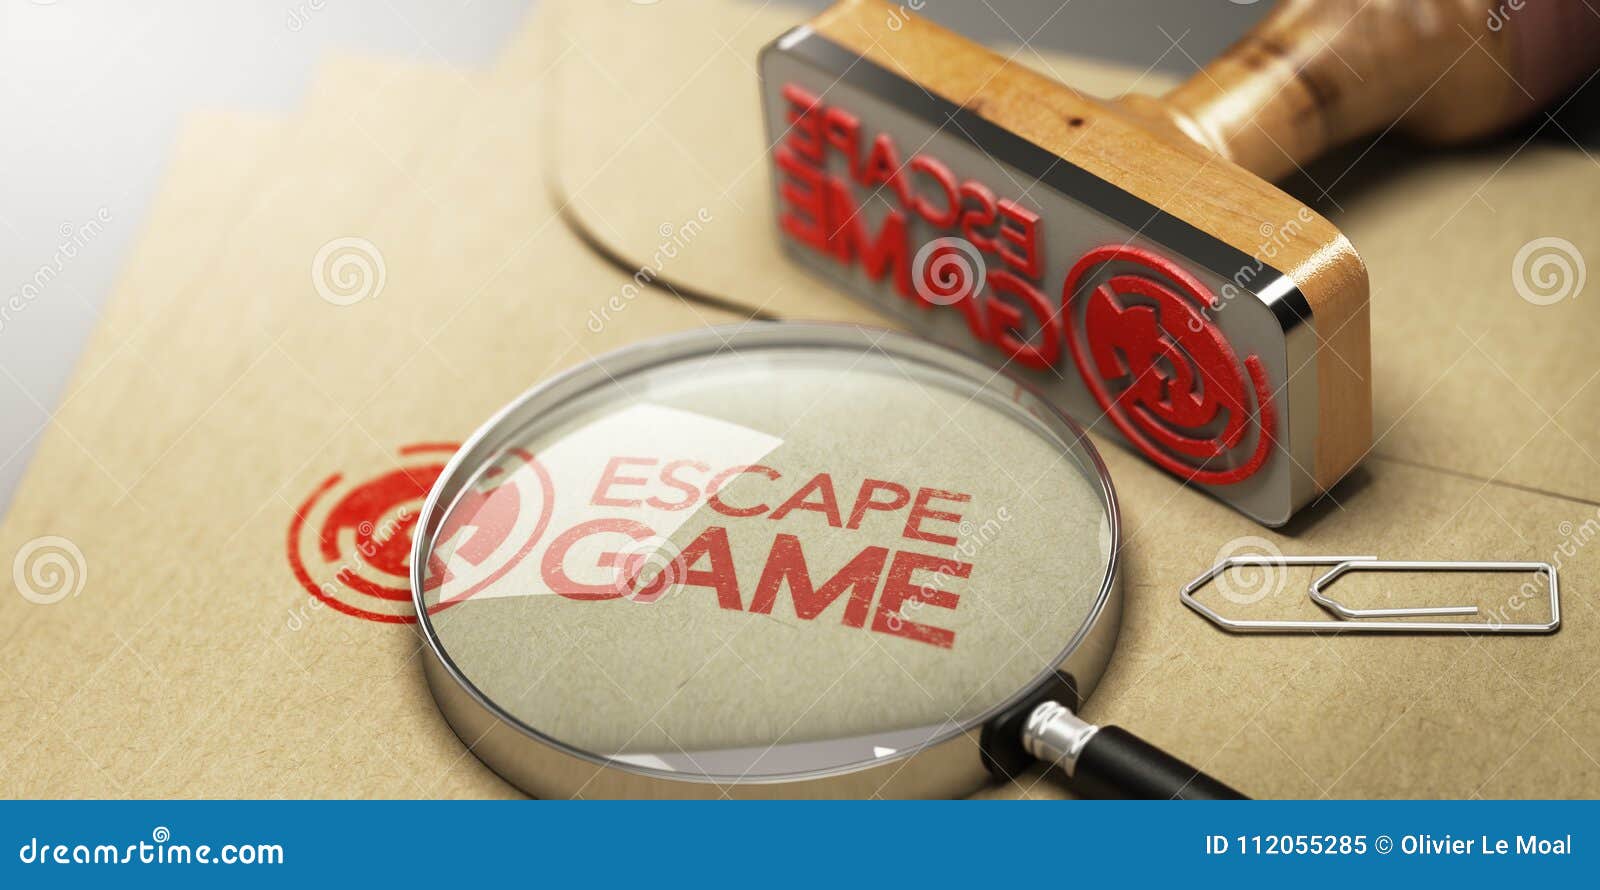 escape room, adventure game concept